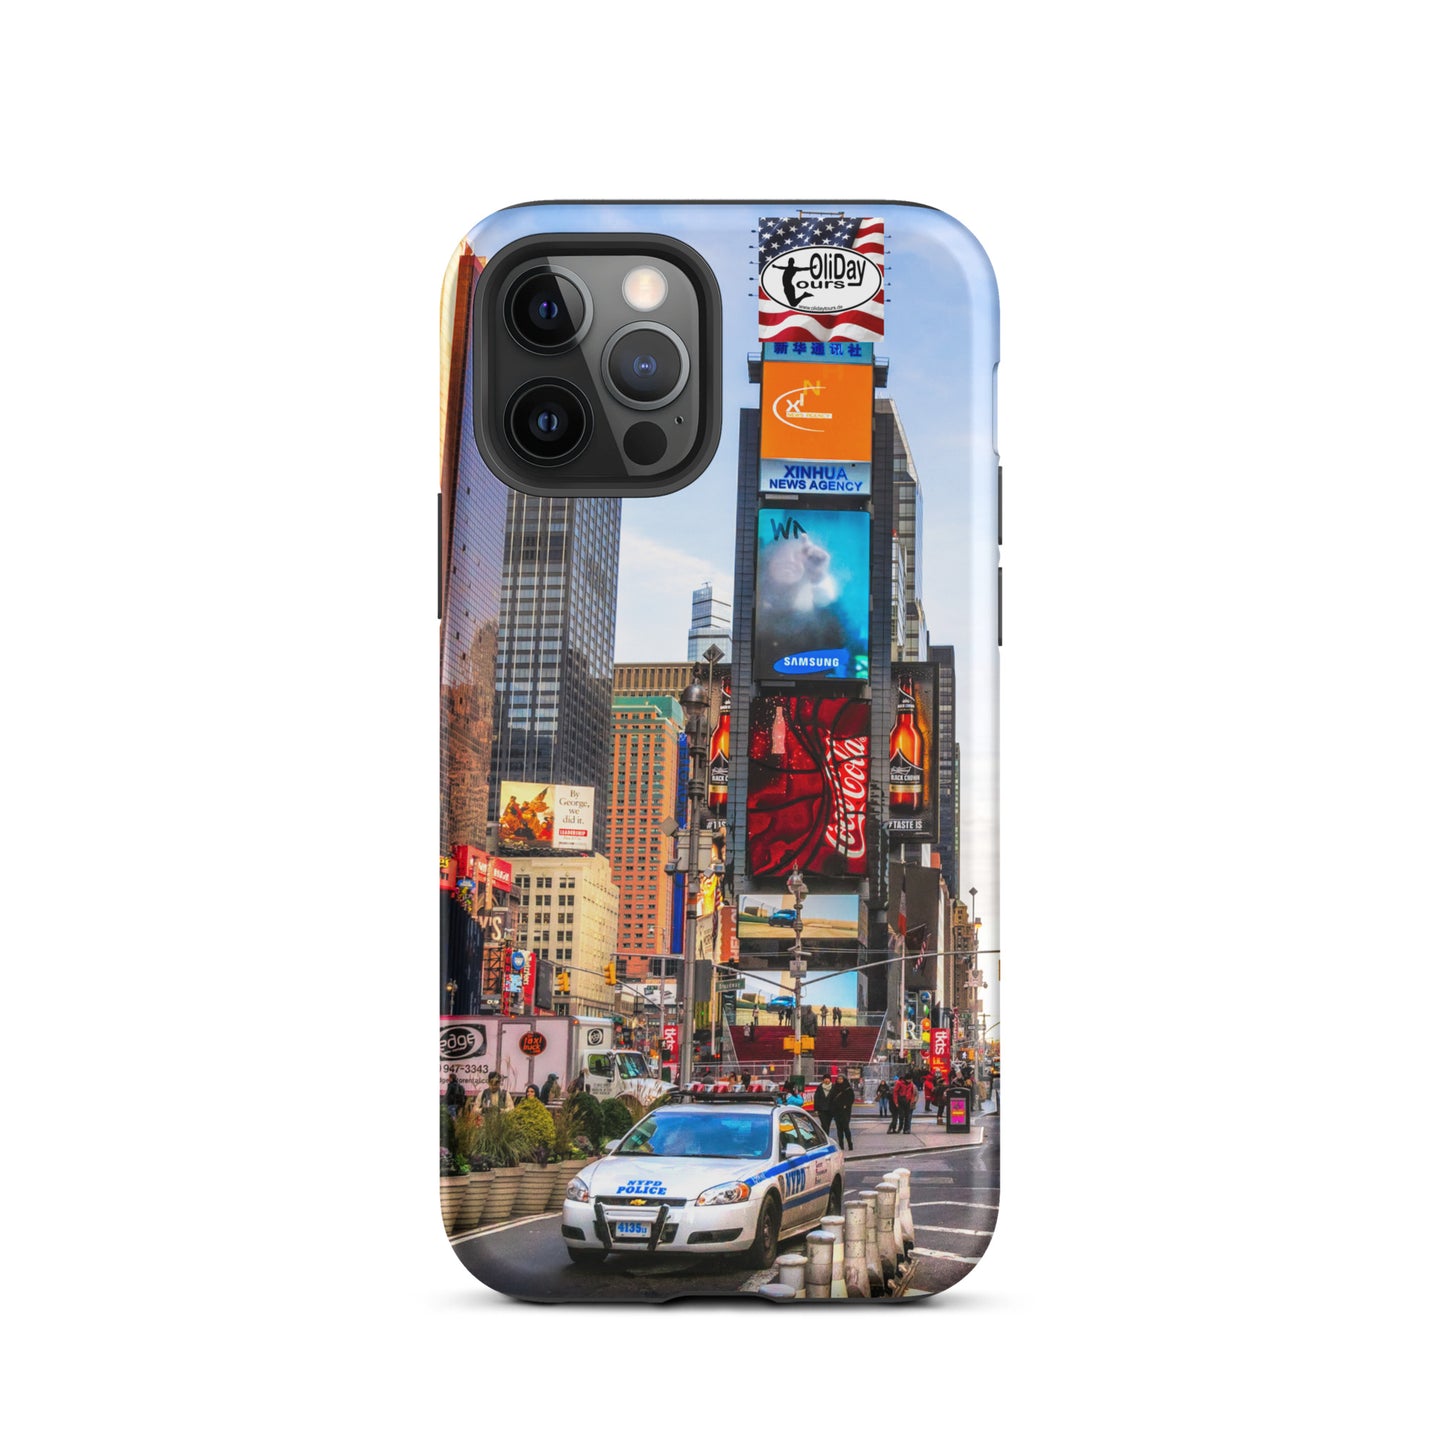 Olidaytours Police Times Square SuZie Hardcase iPhone® Handyhülle